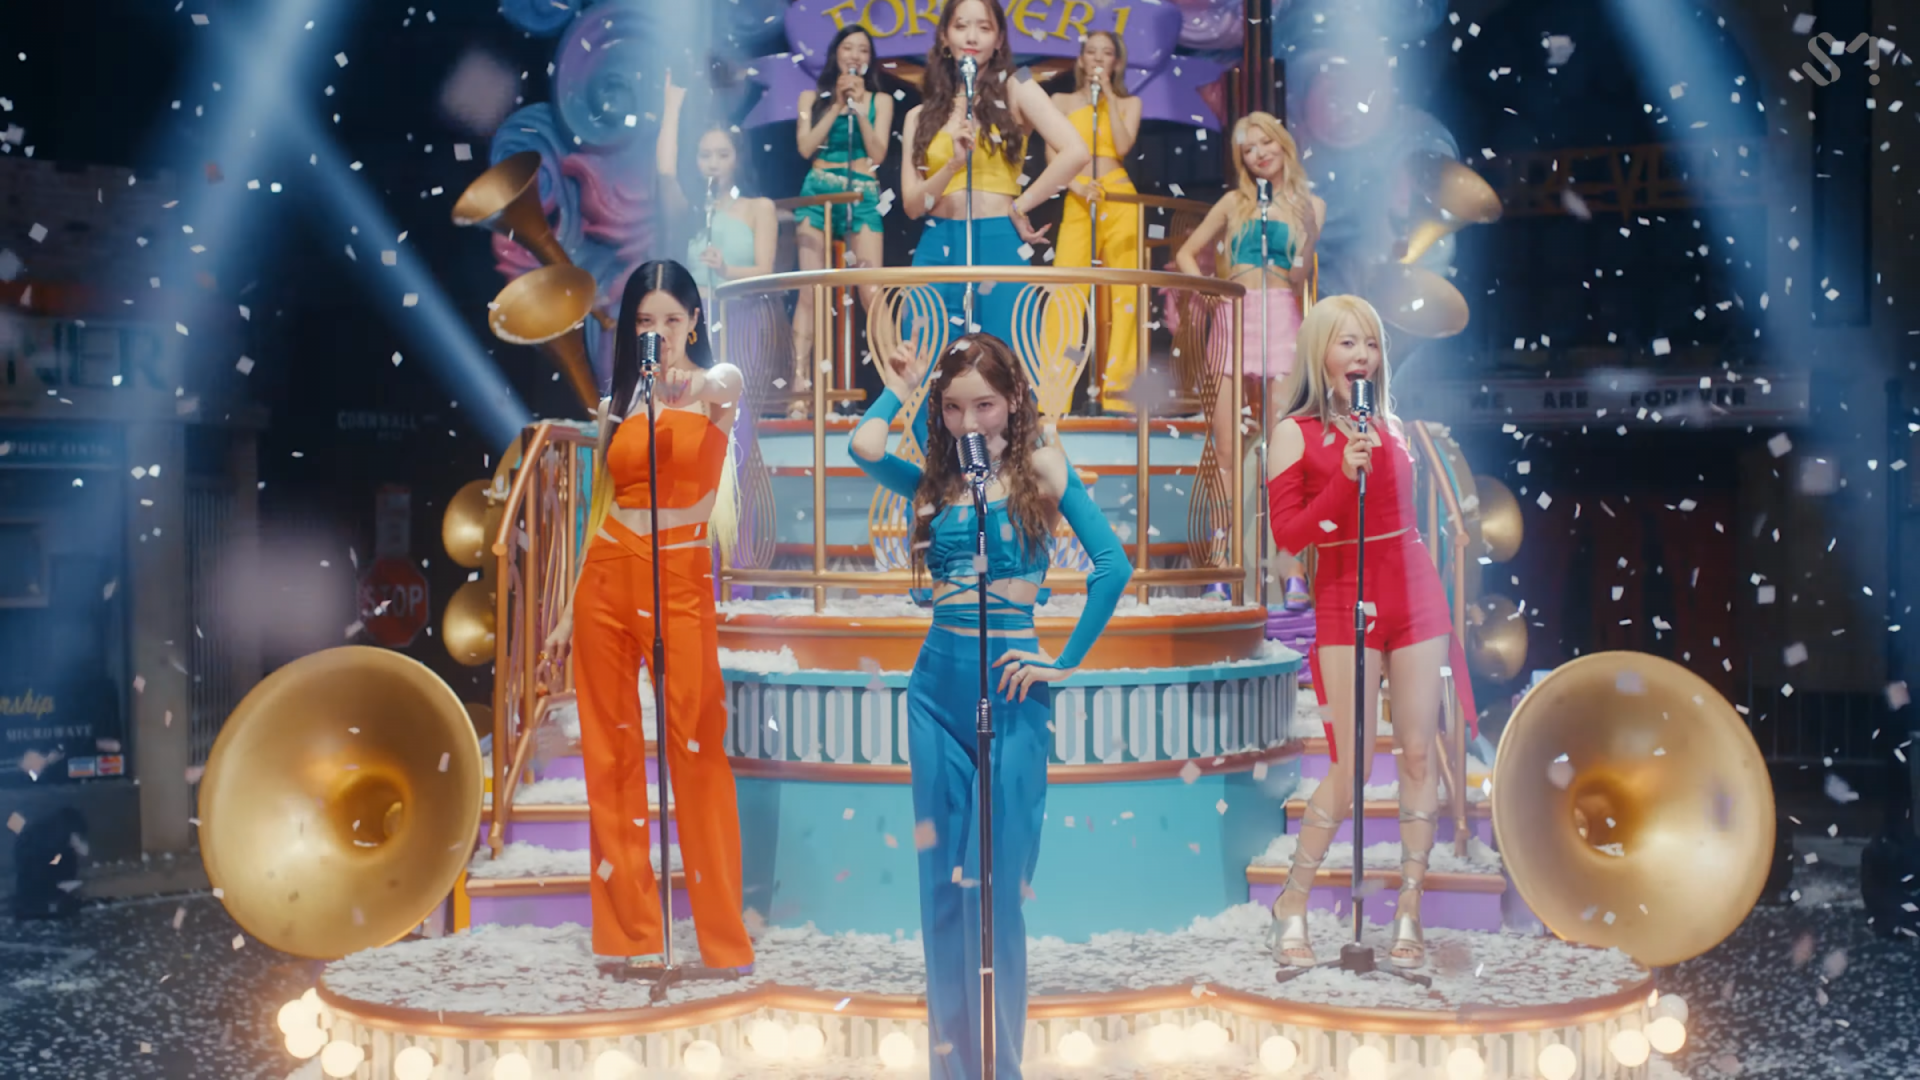 ผู้กำกับ MV “FOREVER 1” ของ Girls’ Generation ออกมายอมรับว่าเลียนแบบโลโก้ของดิสนีย์